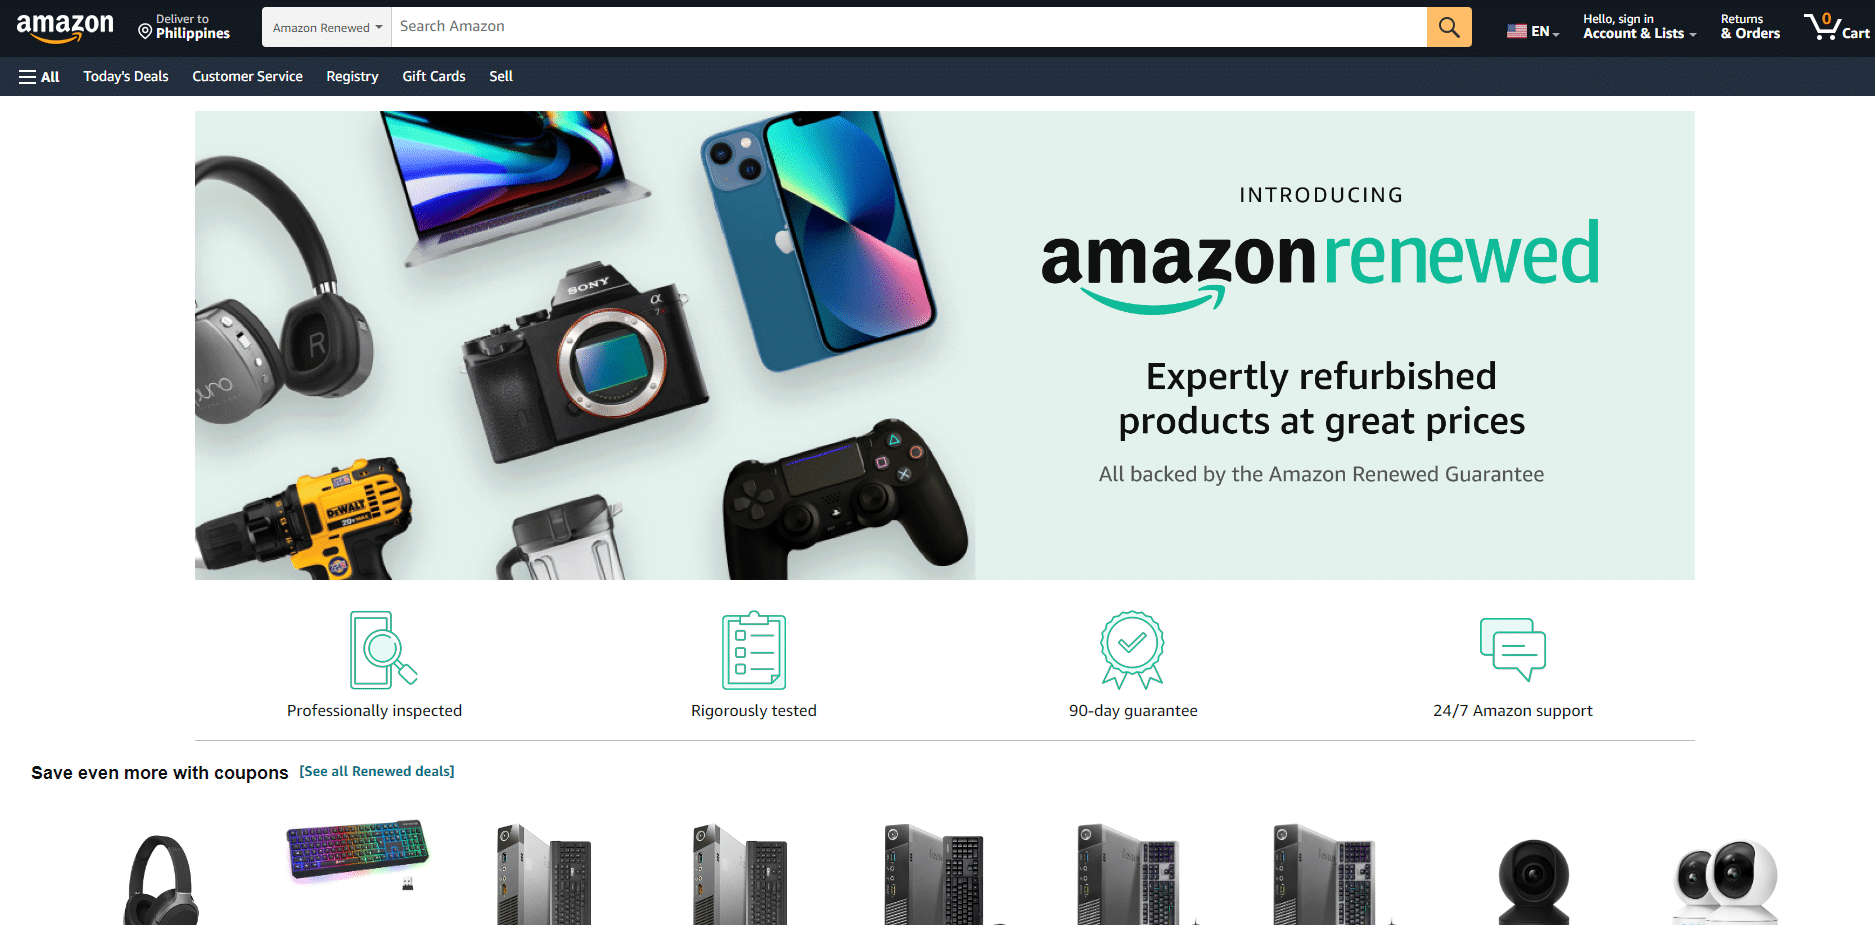 Amazon Renewed website